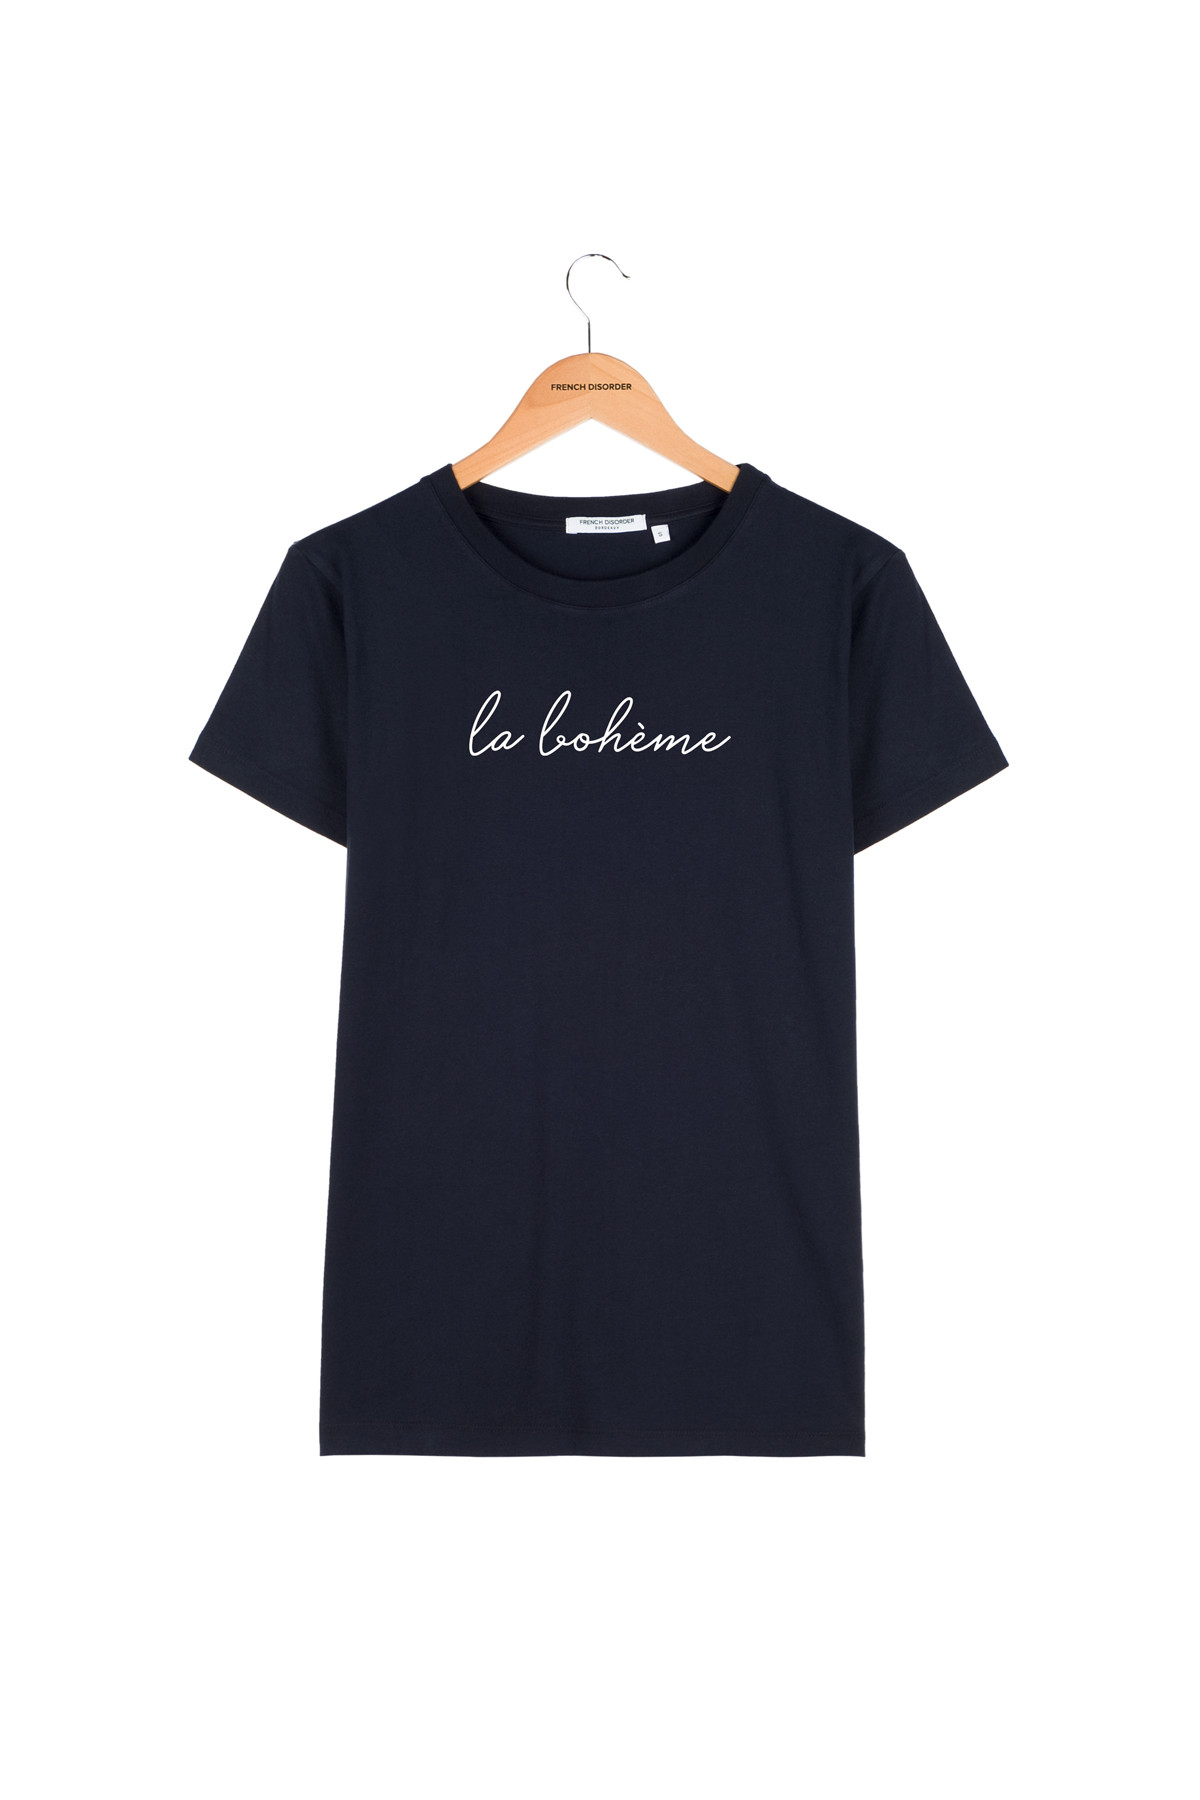 Photo de T-SHIRTS COL ROND T-shirt LA BOHEME chez French Disorder